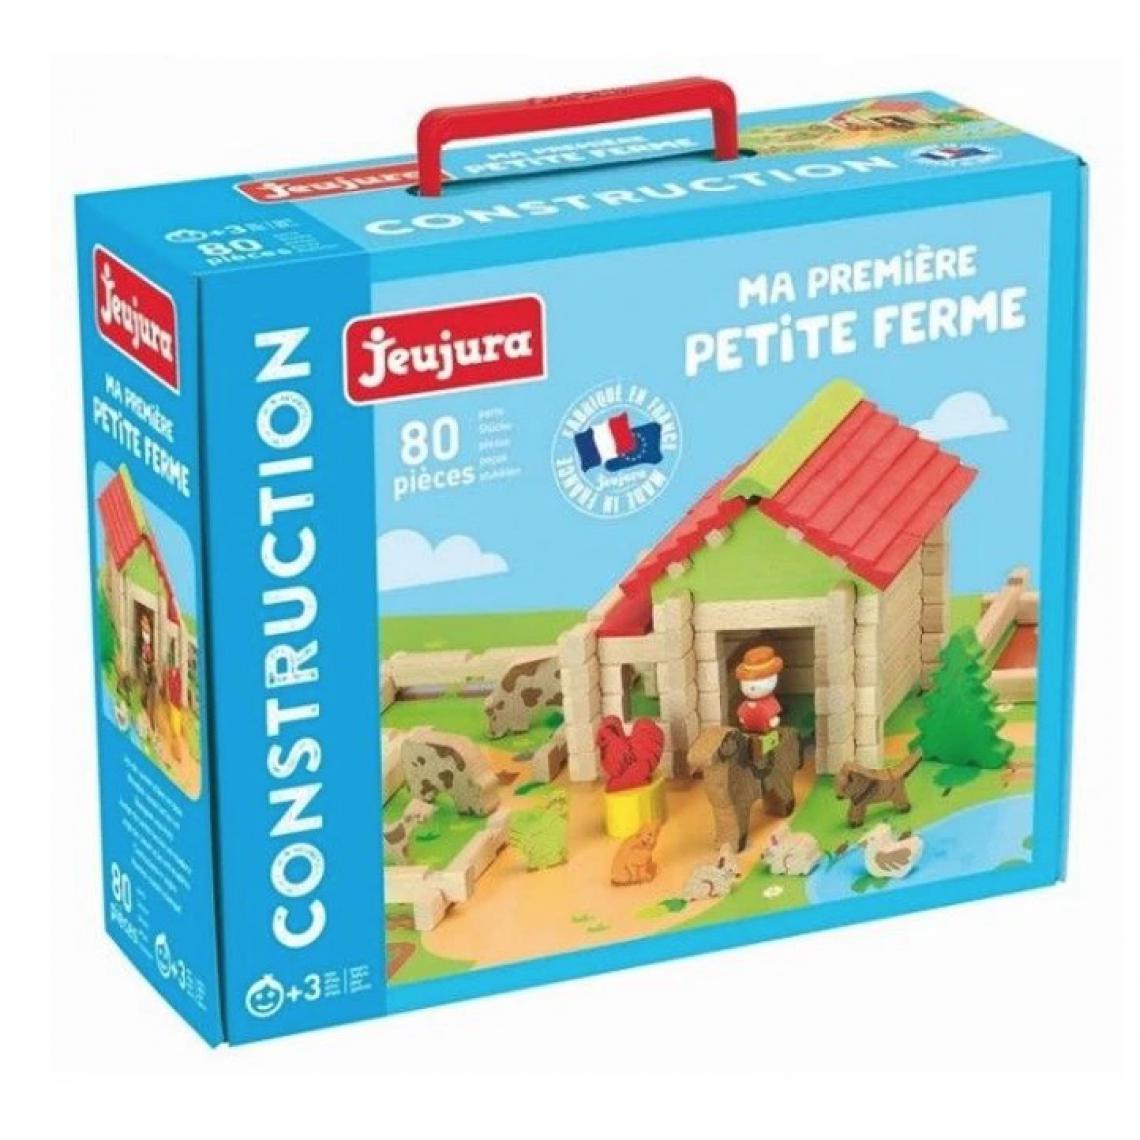 Jeujura - JeuJura Ma Premiere petite ferme 80 pieces - Briques et blocs